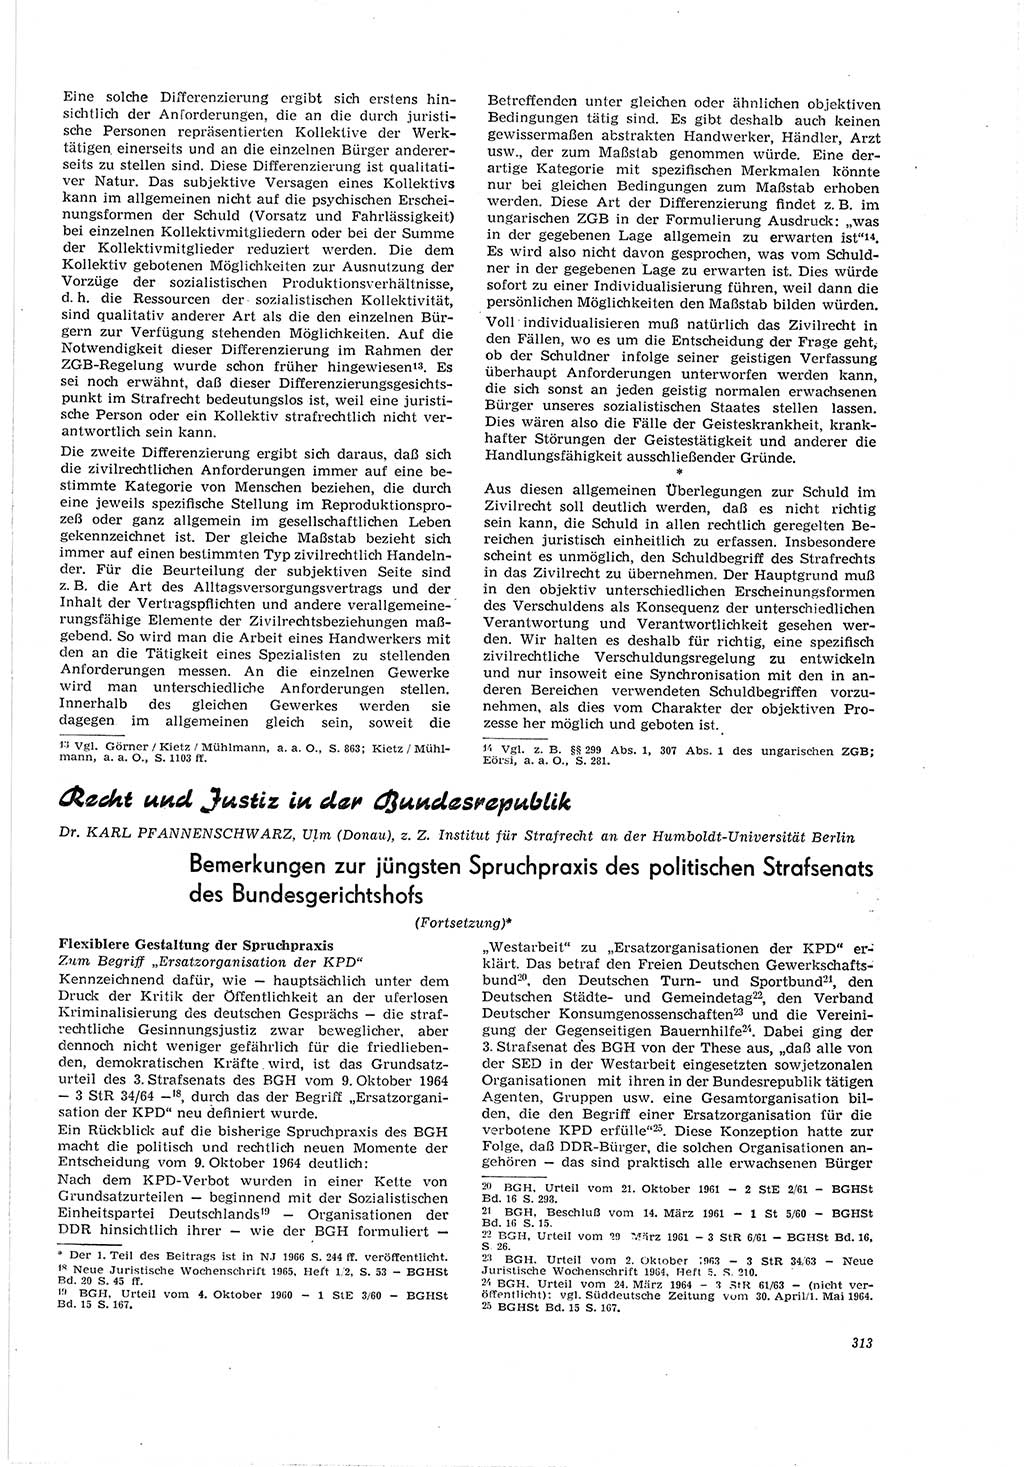 Neue Justiz (NJ), Zeitschrift für Recht und Rechtswissenschaft [Deutsche Demokratische Republik (DDR)], 20. Jahrgang 1966, Seite 313 (NJ DDR 1966, S. 313)